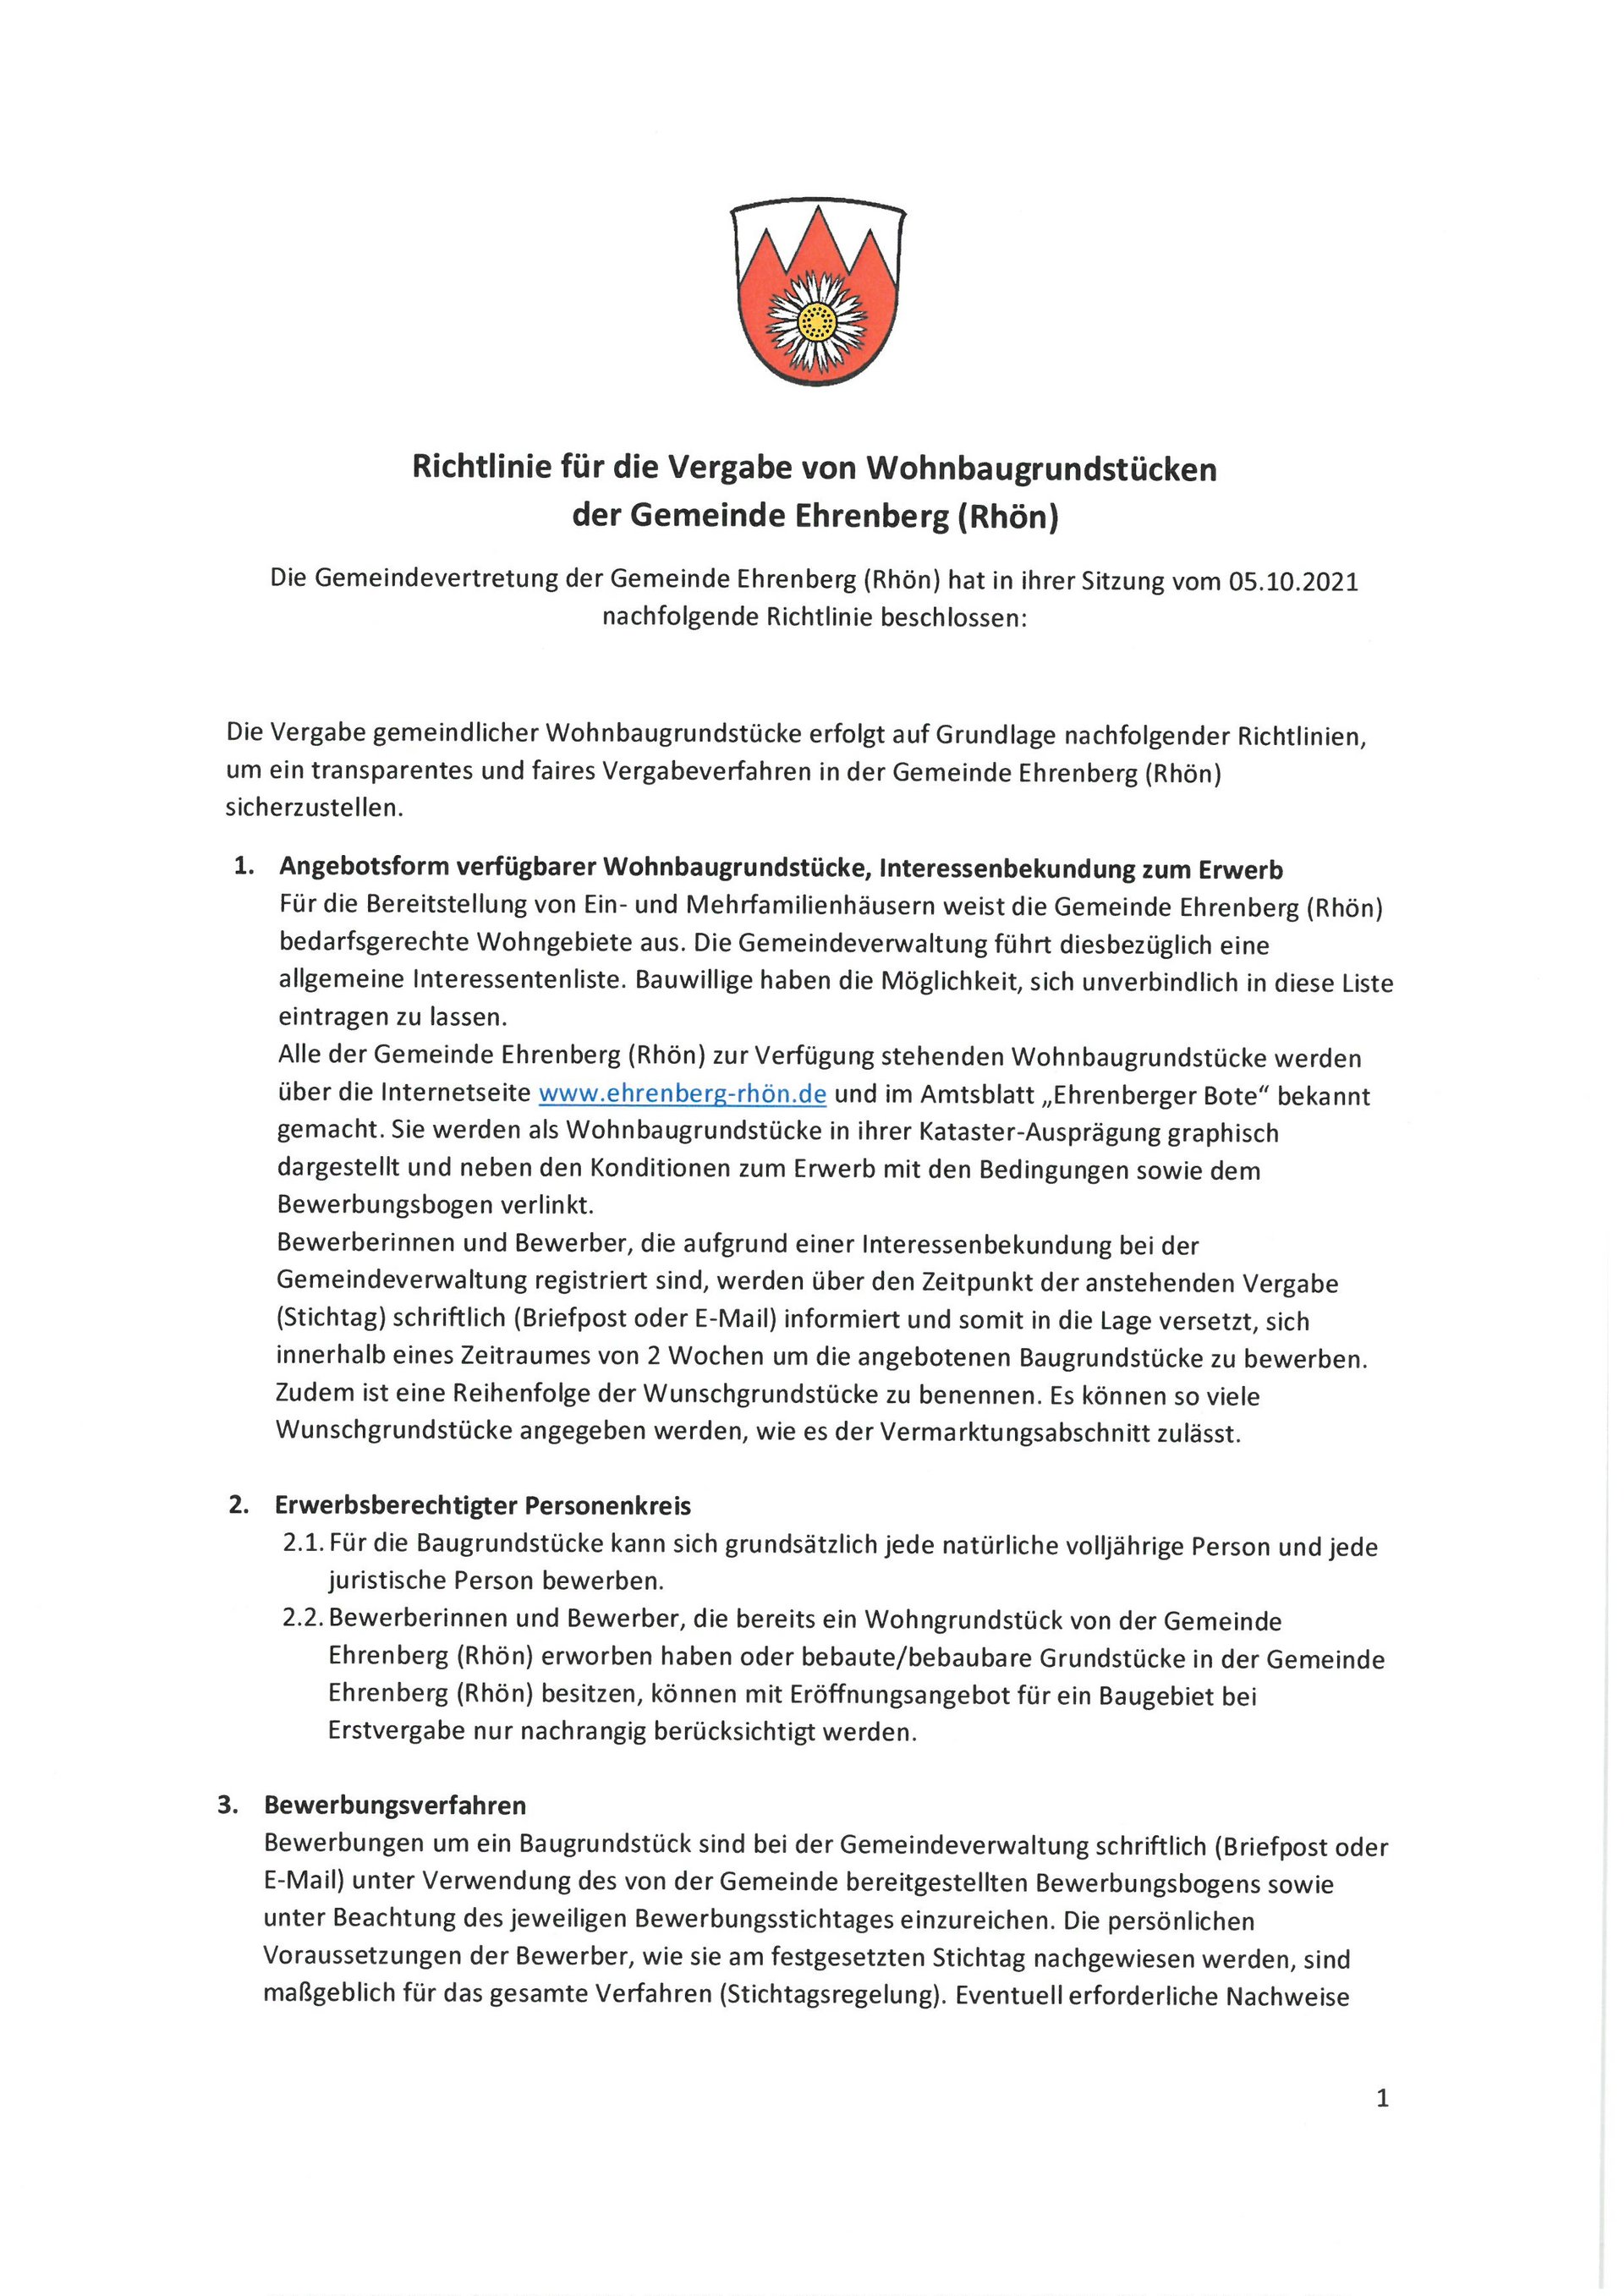 Richtlinie für die Vergabe von Wohnbaugrundstücken der Gemeinde Ehrenberg (Rhön)